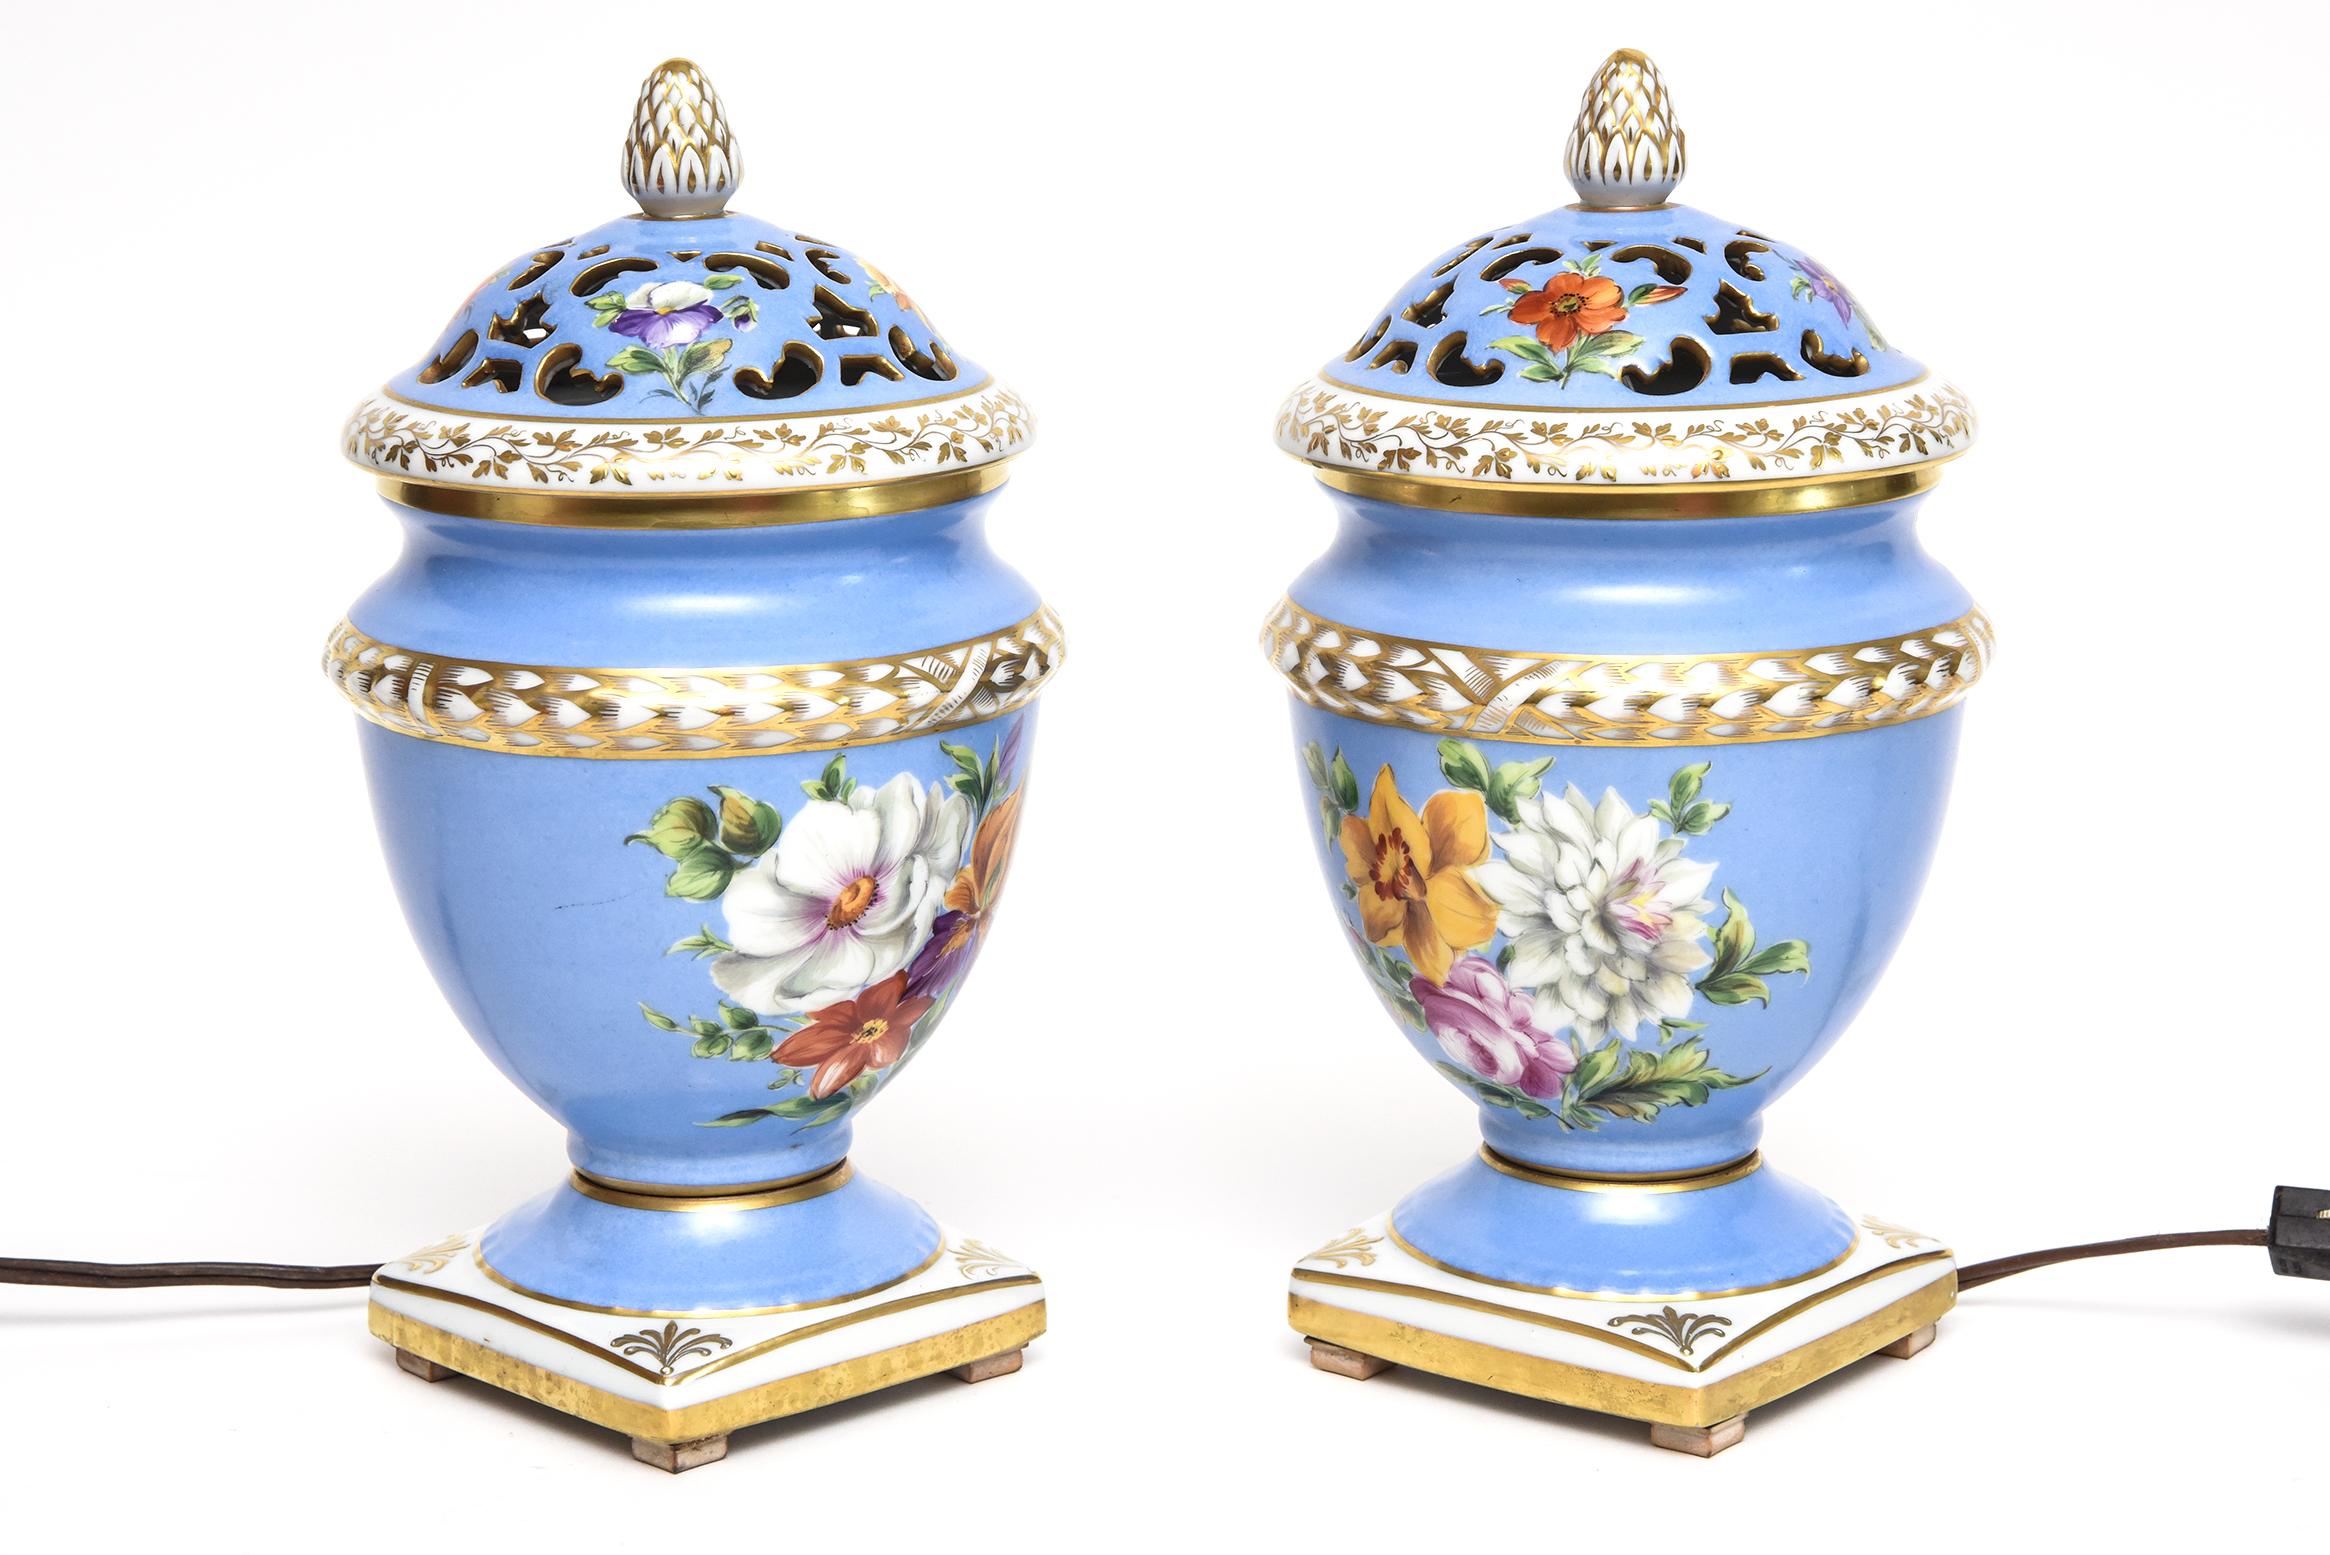 Pair of Le Tallec Paris Floral Blue Gilt Porcelain Pot Pourri Perfume Urns Lamps In Good Condition For Sale In Miami Beach, FL